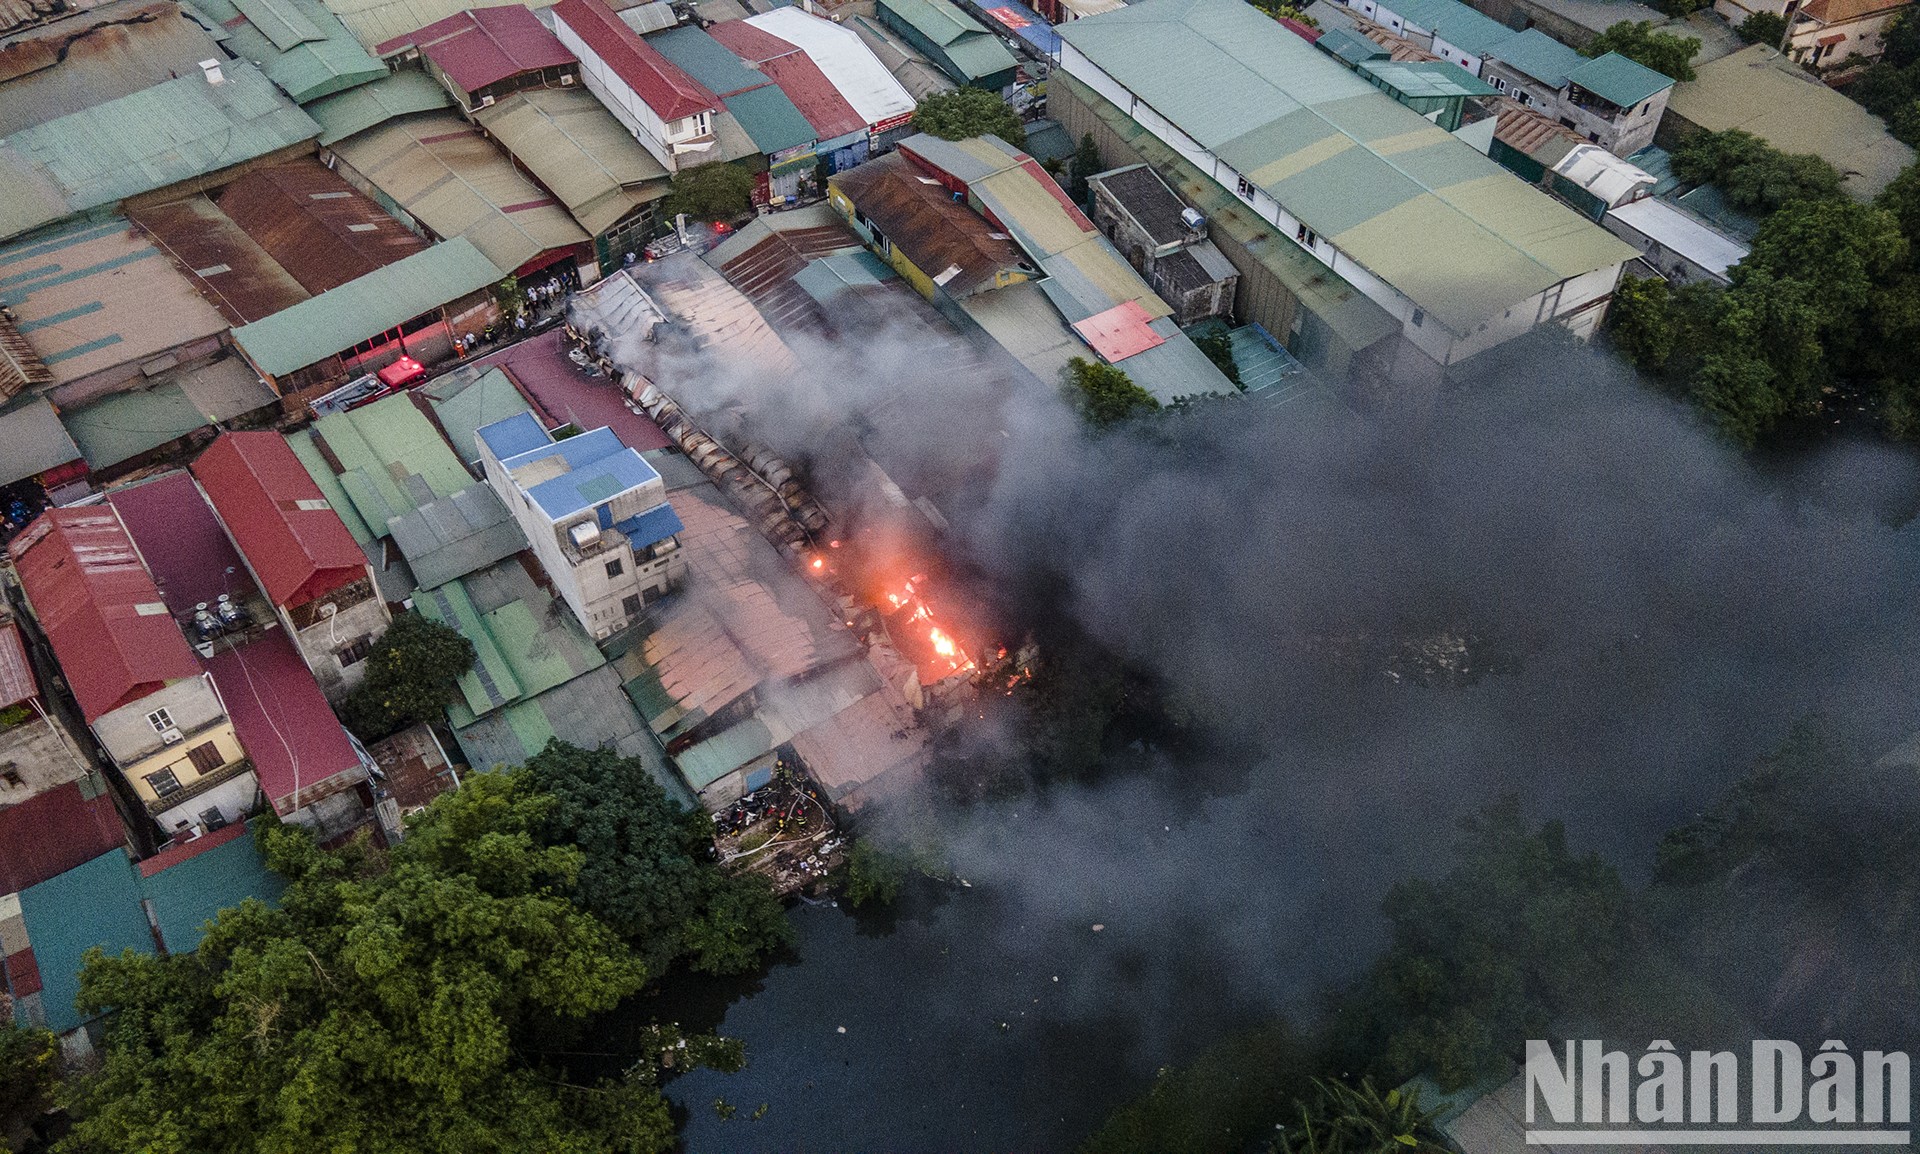 [Ảnh] Cháy xưởng sửa ô-tô tại Hà Nội, cột khói đen bốc cao hàng chục mét